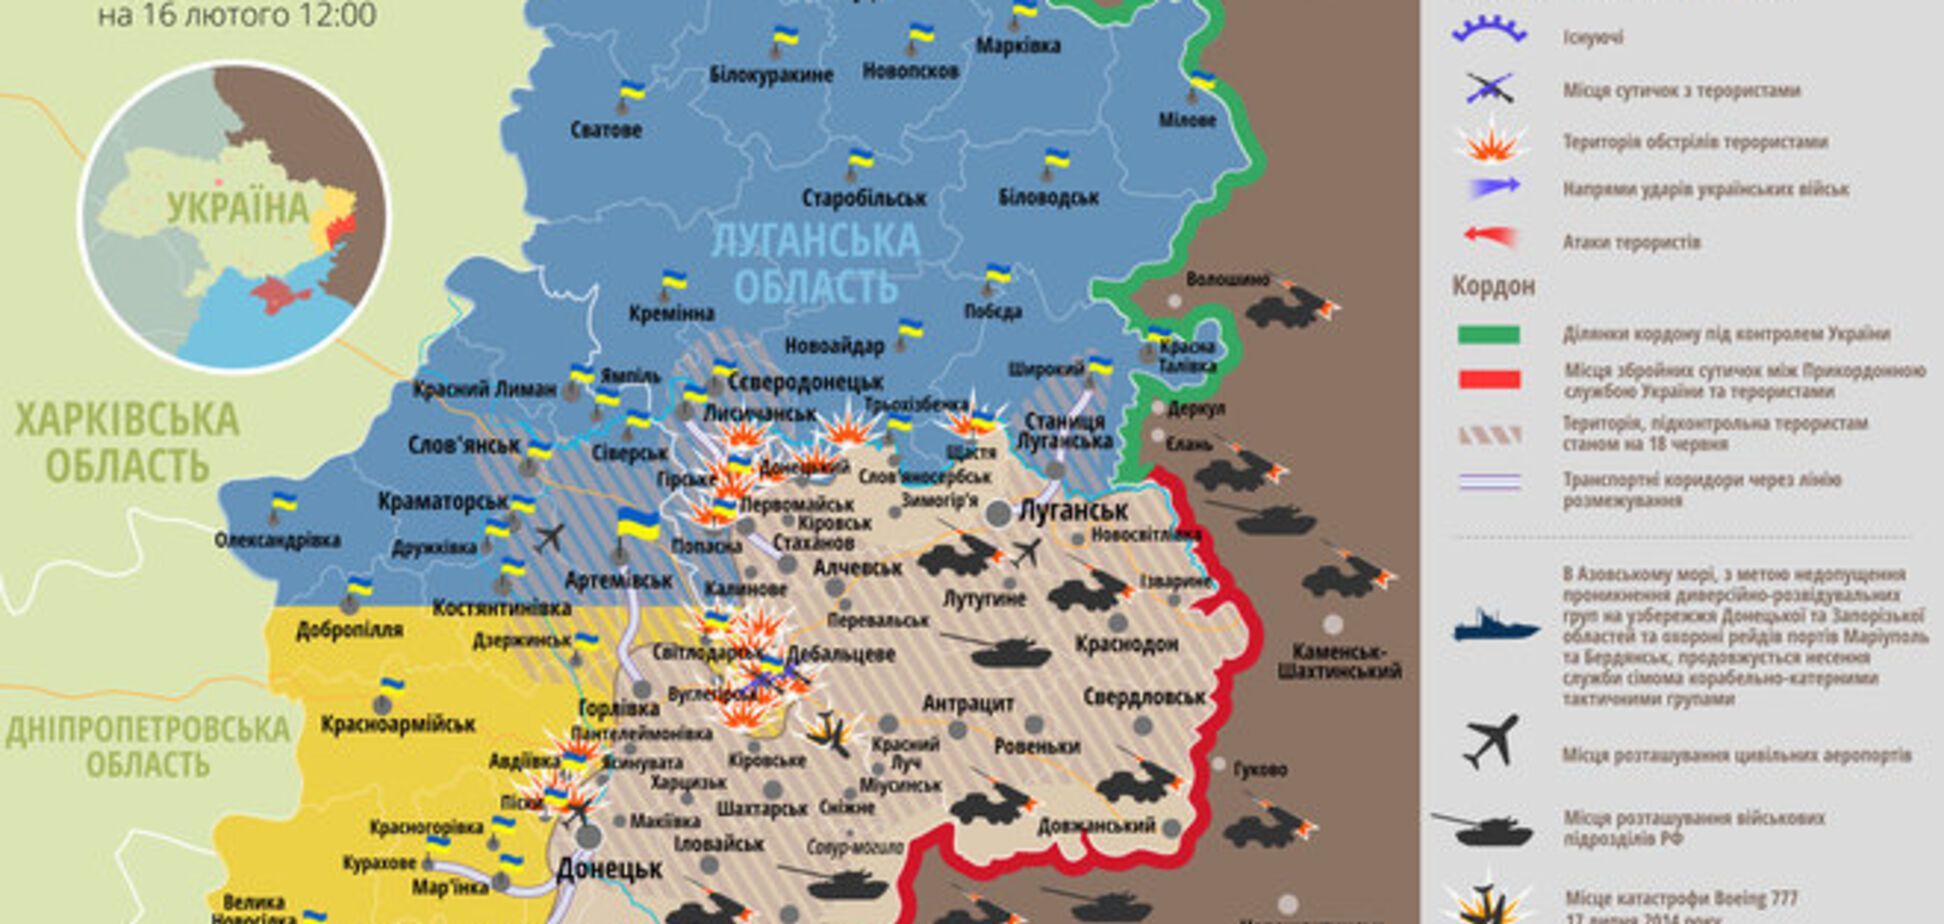 Пять бойцов погибли за день 'перемирия': карта АТО